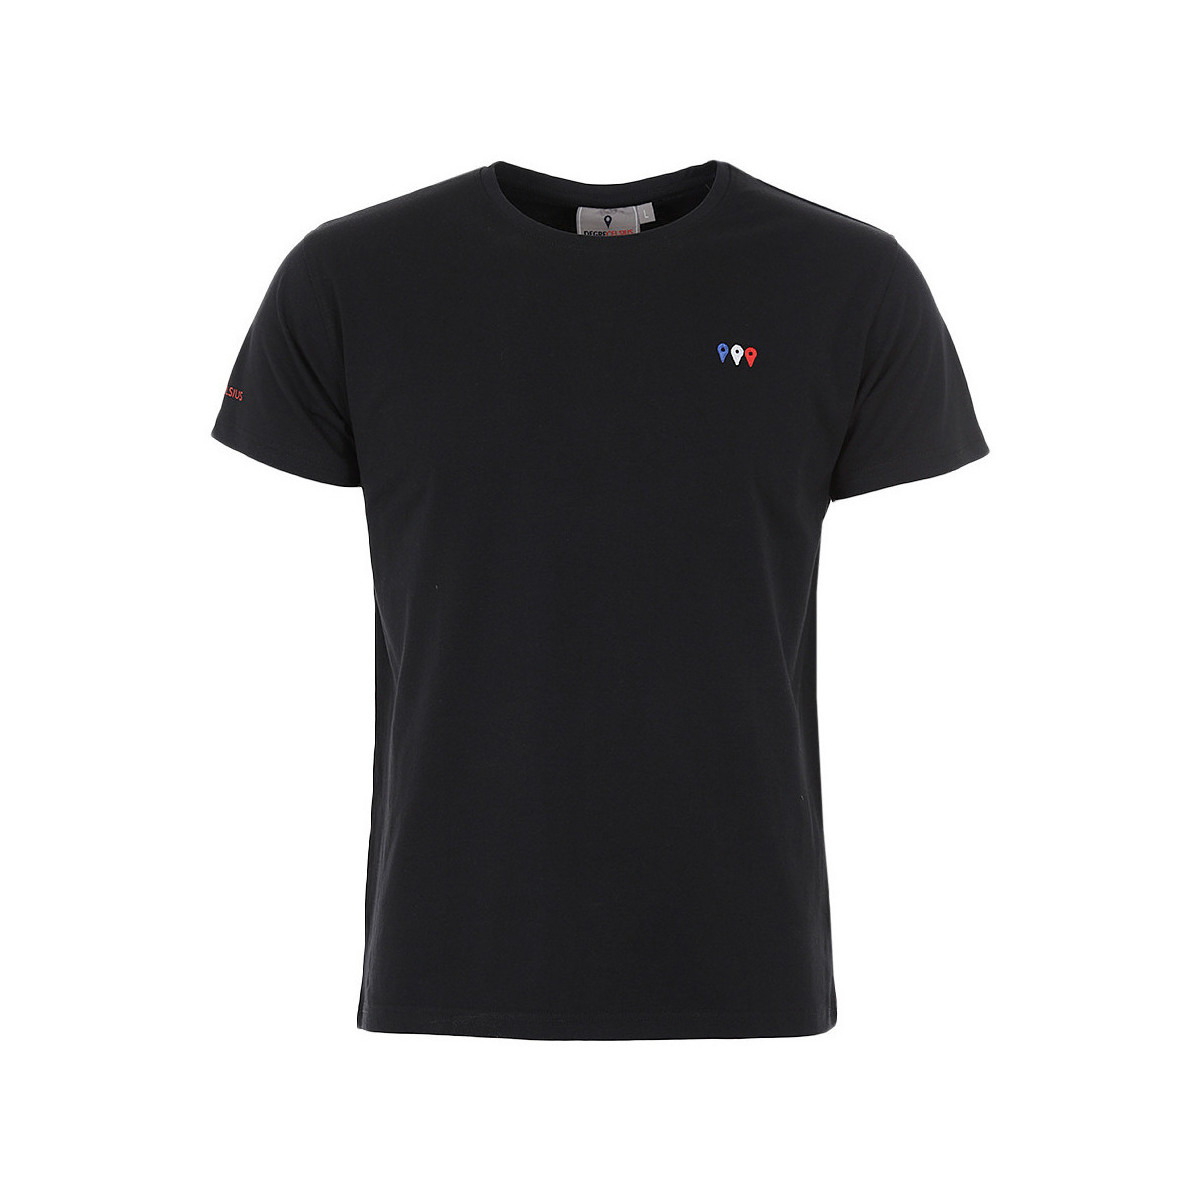 tekstylia Męskie T-shirty z krótkim rękawem Degré Celsius T-shirt manches courtes homme CERGIO Czarny